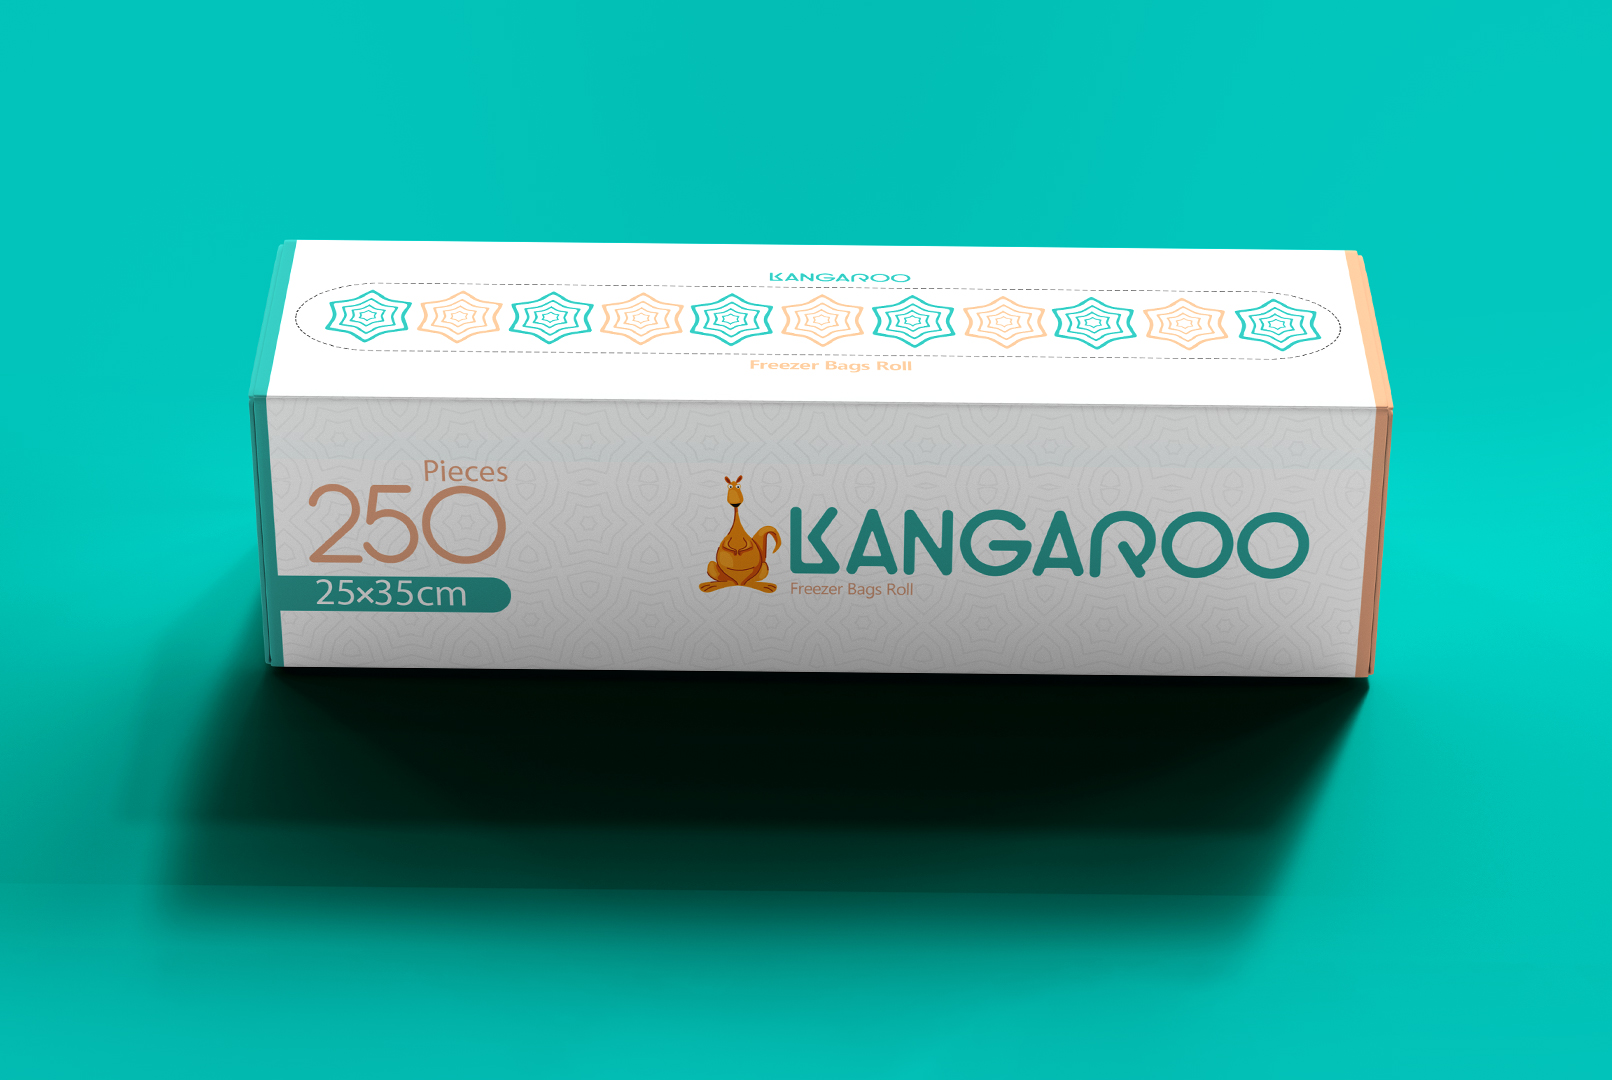 kangaroo brand label design